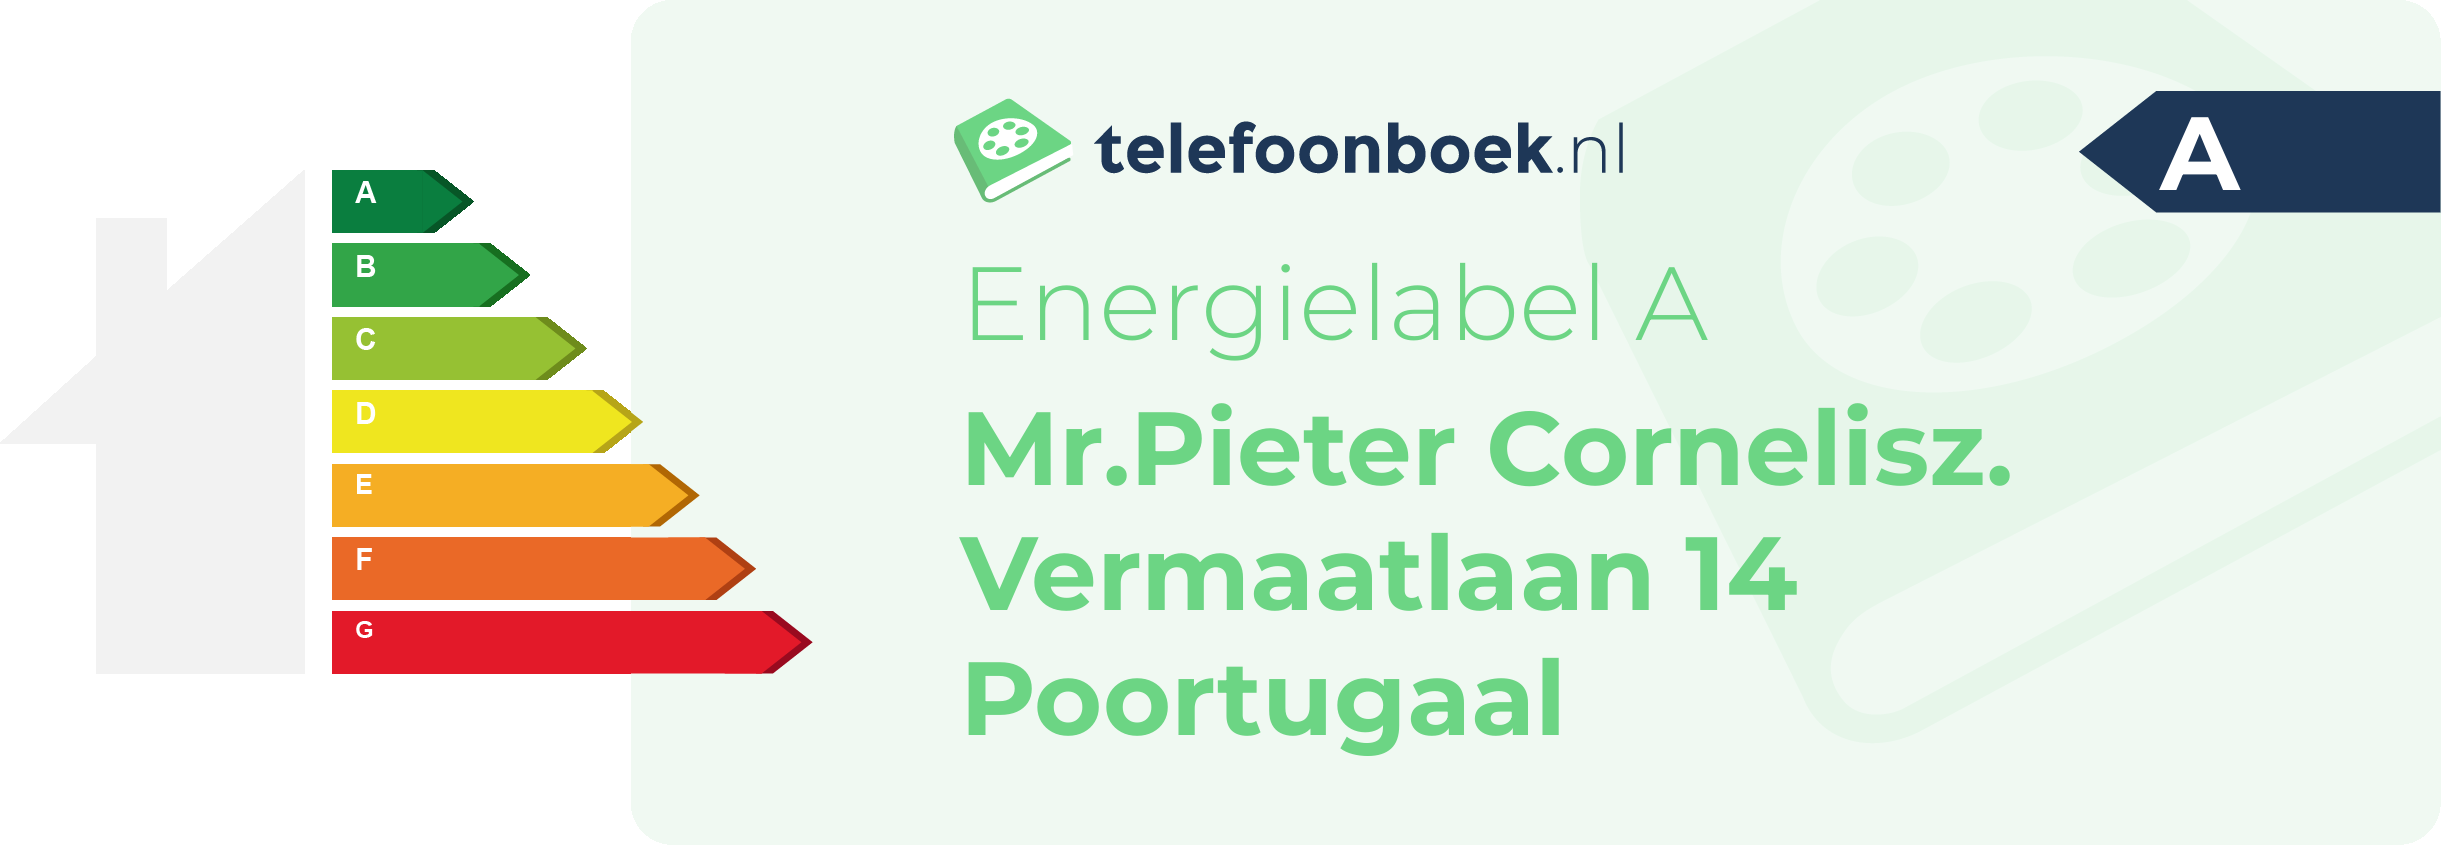 Energielabel Mr.Pieter Cornelisz. Vermaatlaan 14 Poortugaal